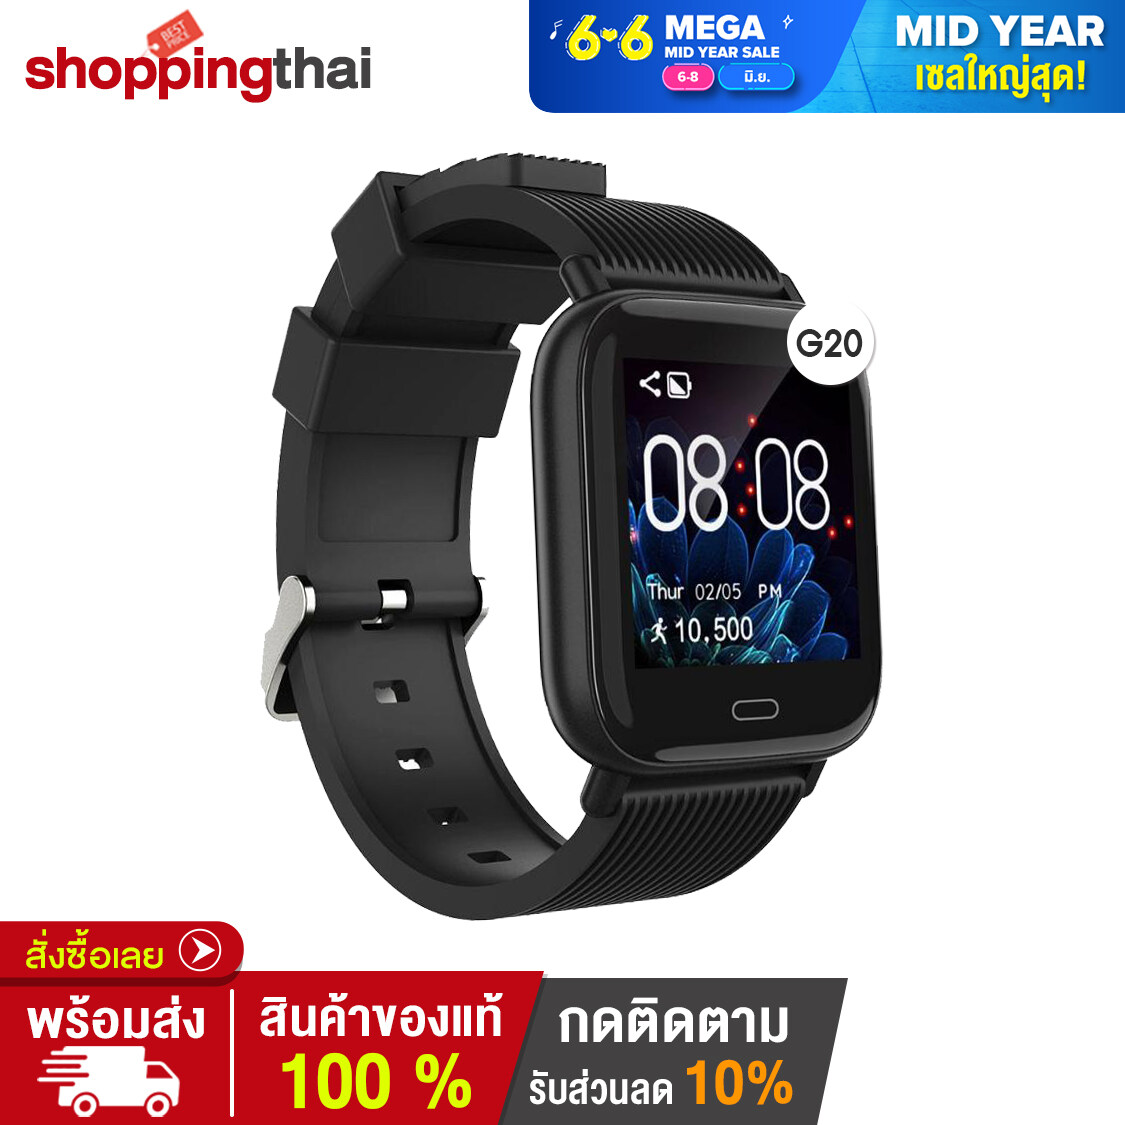 shopping Thai - Smartwatch G20 นาฬิกา สมาร์ทวอทช์  นาฬิกาอัจฉริยะ  สายรัดข้อมือเพื่อสุขภาพ ดิจิตอล มากกว่า 10 ฟังก์ชั่น